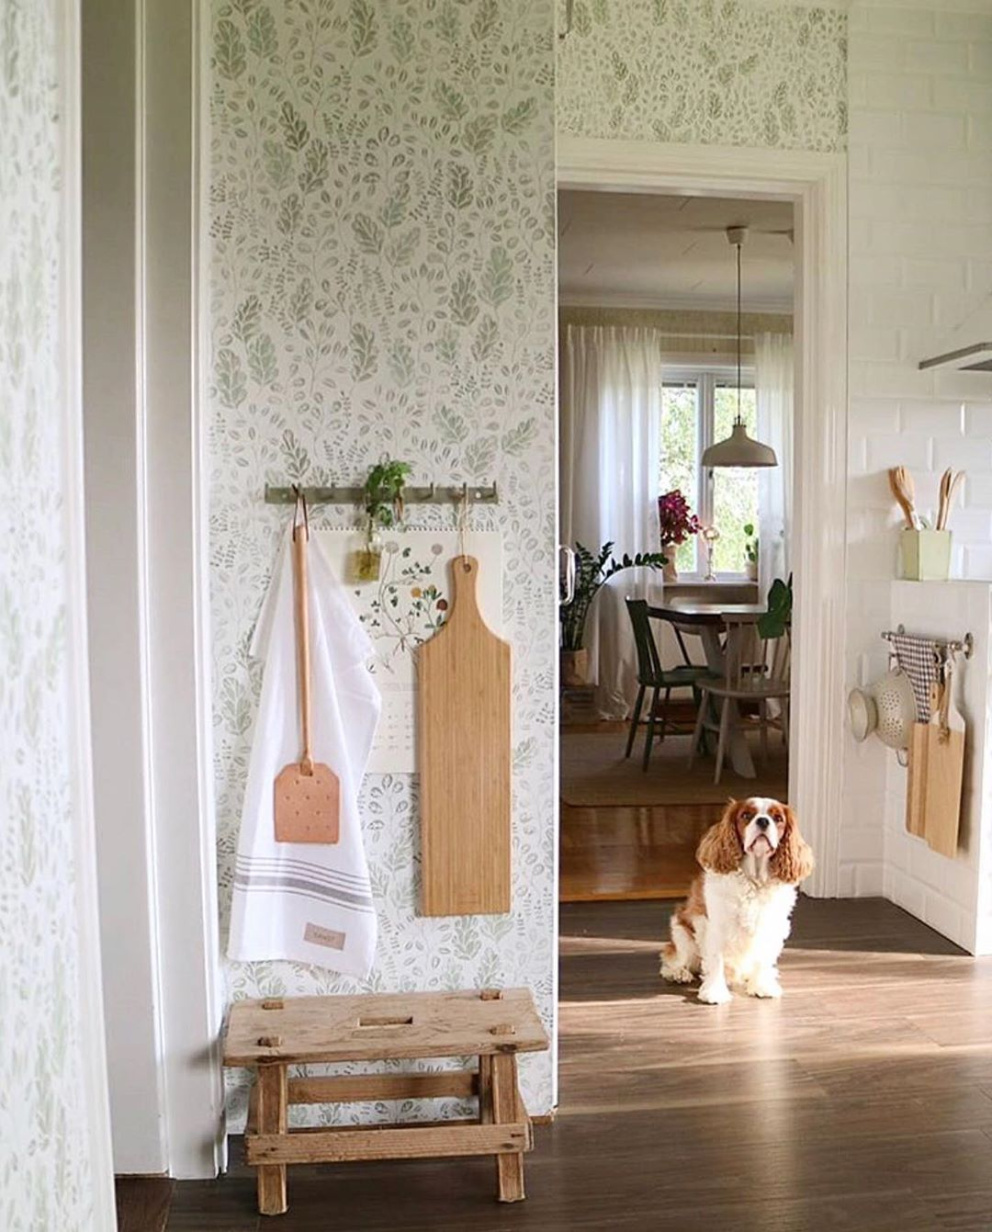 Tapety zdobí stěny v celém domě. Většinou na nich najdete florální motivy v zelených a smetanových tónech.&nbsp;
